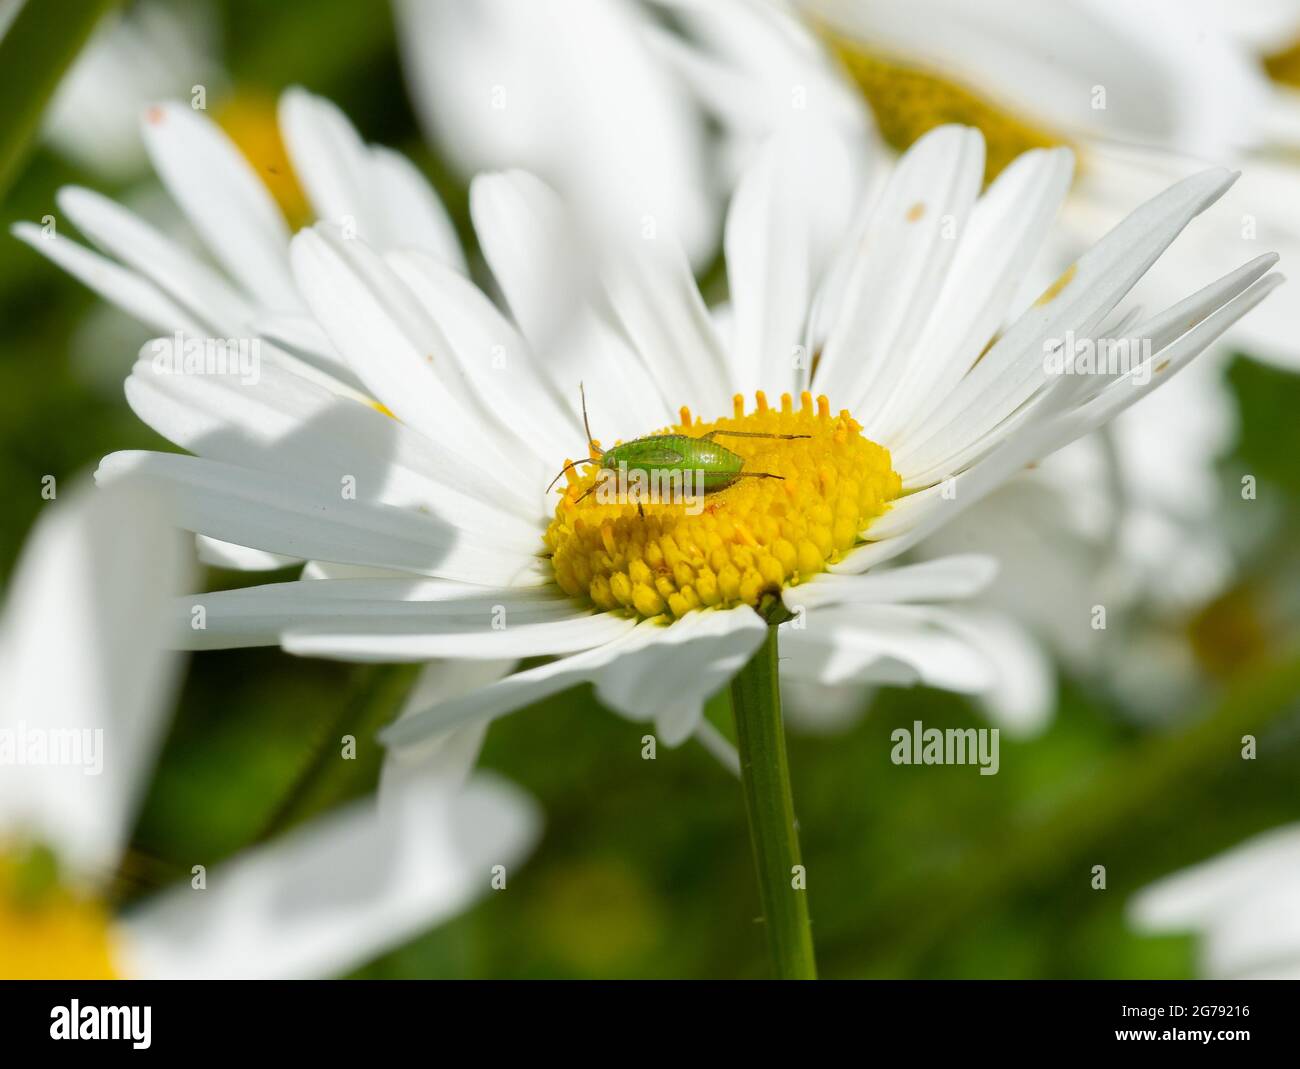 Una comune ninfa verde capside bug su un Oxeye daisy, Chipping, Preston, Lancashire, UK Foto Stock